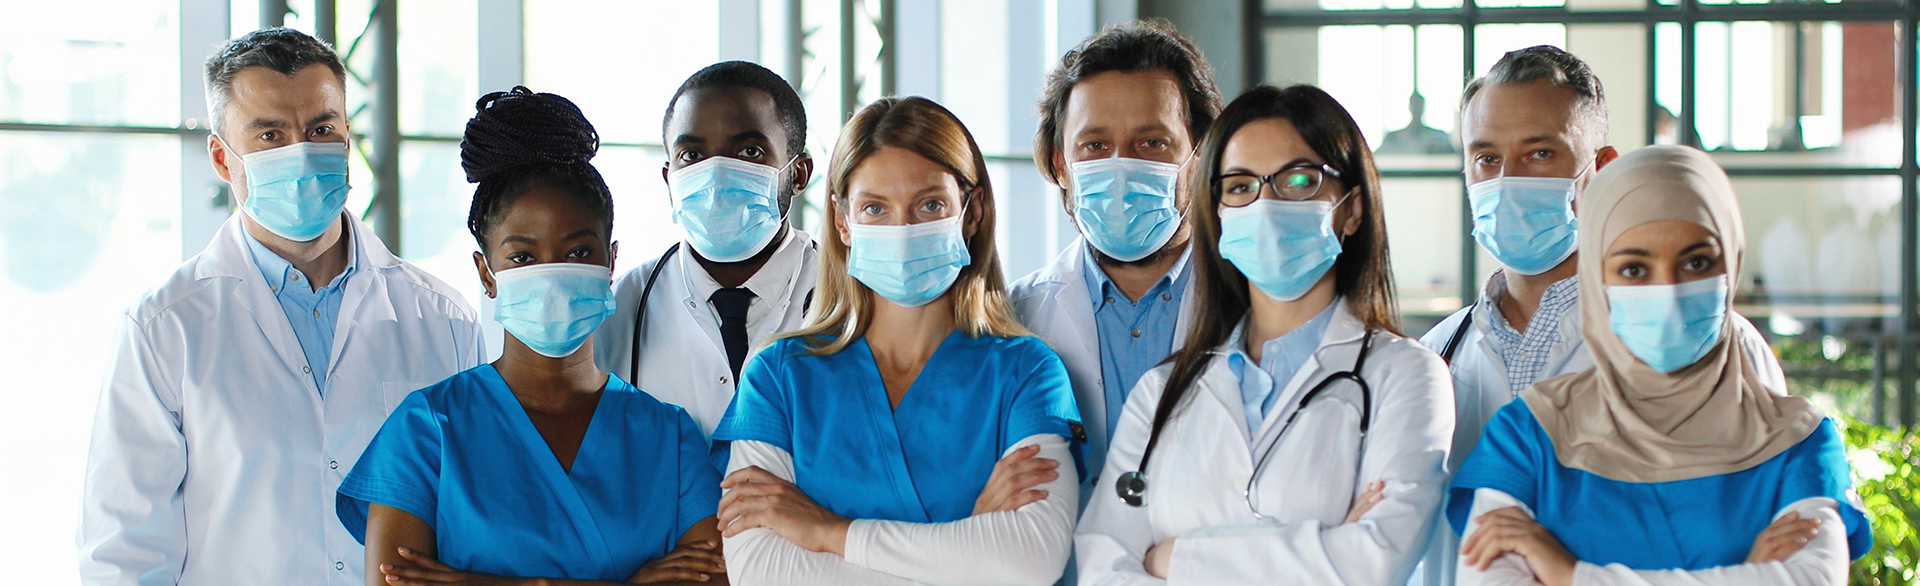 Uma equipe de profissionais de saúde de diferentes nacionalidades, todos com máscara e avental de médico